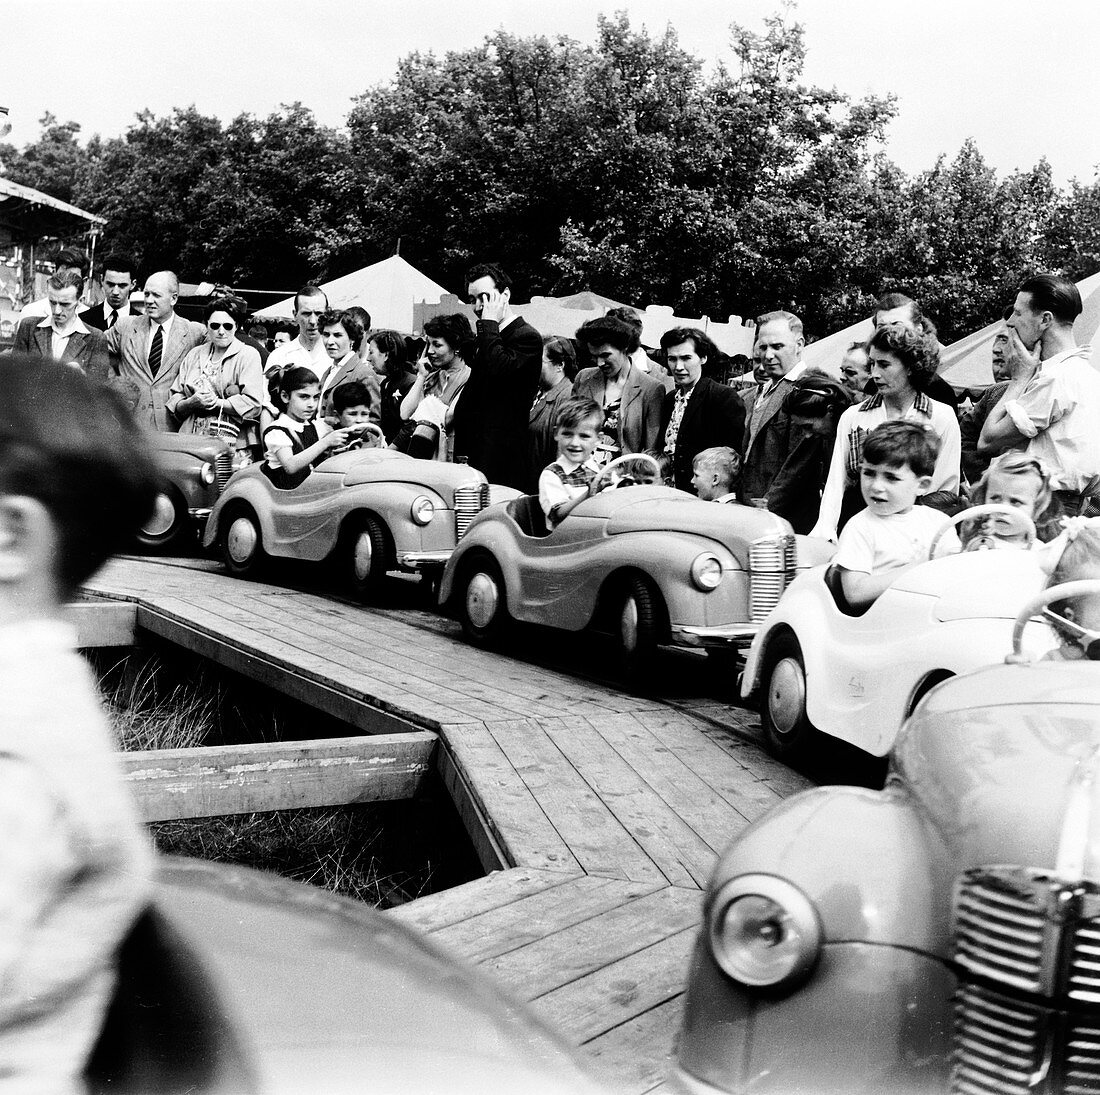 Hampstead fun fair, London, 1954